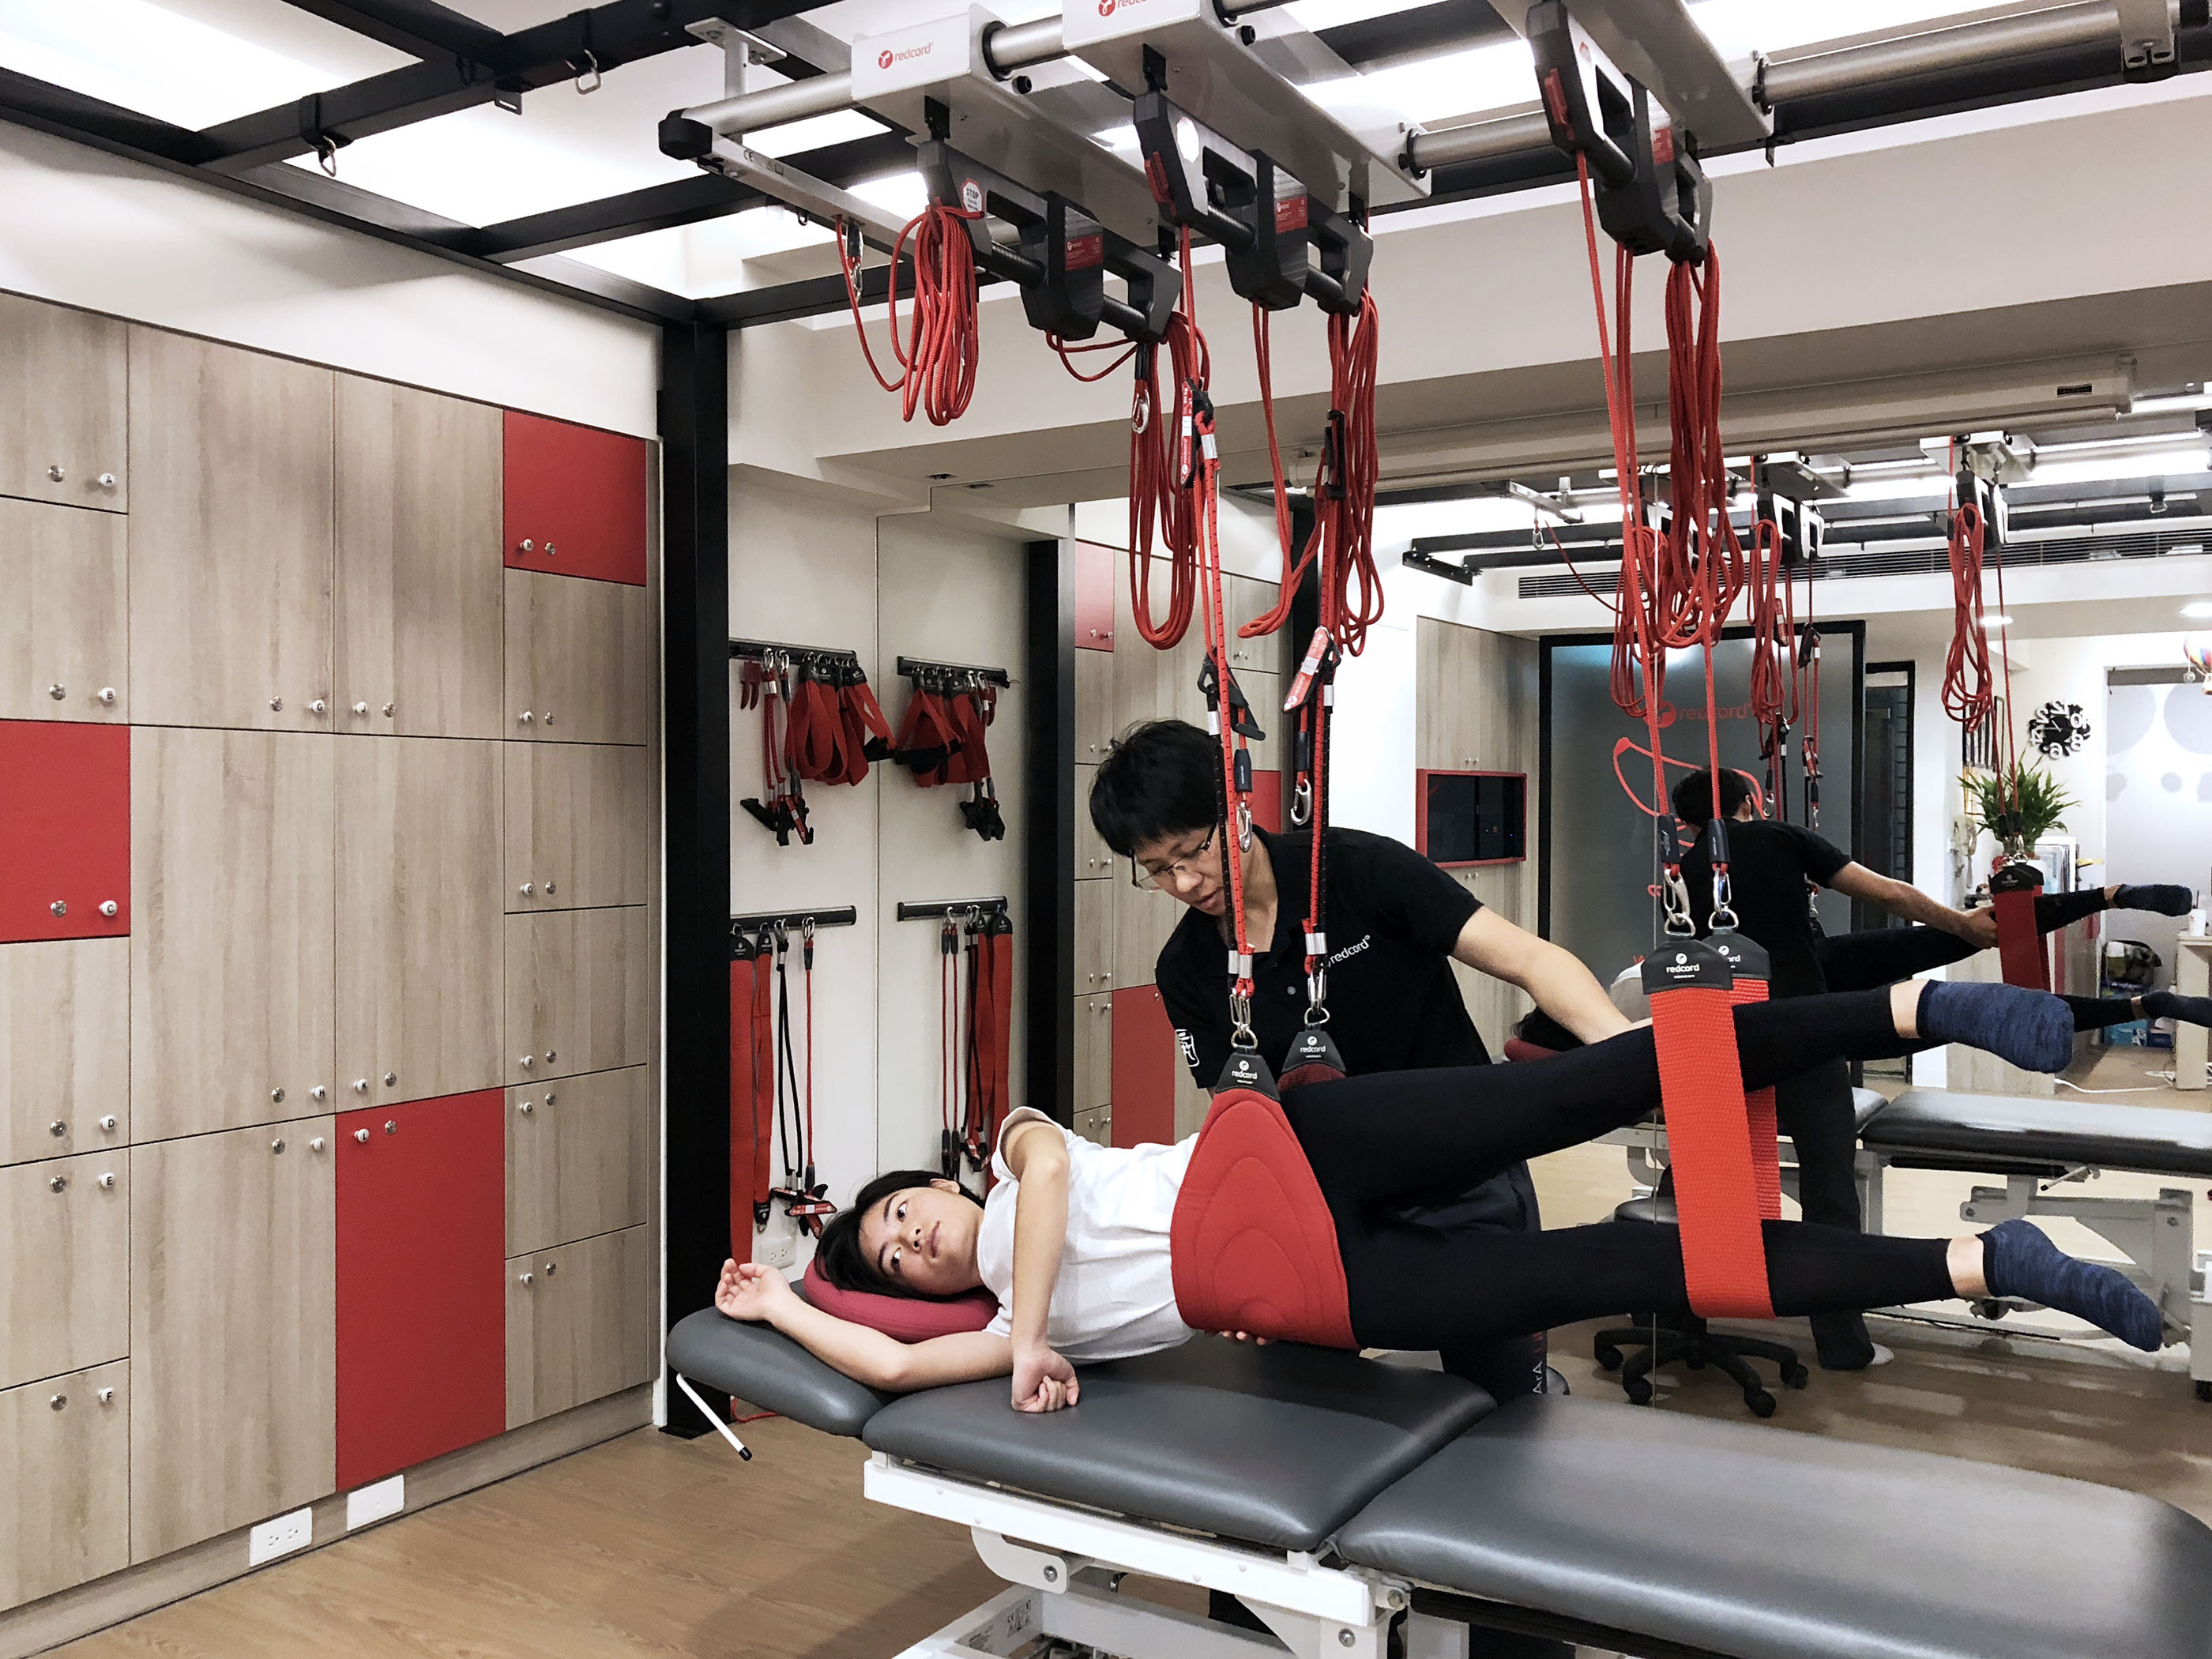 秉格物理治療所-redcord-紅繩懸吊系統-物理治療-神經肌肉再教育-核心肌群-運動治療